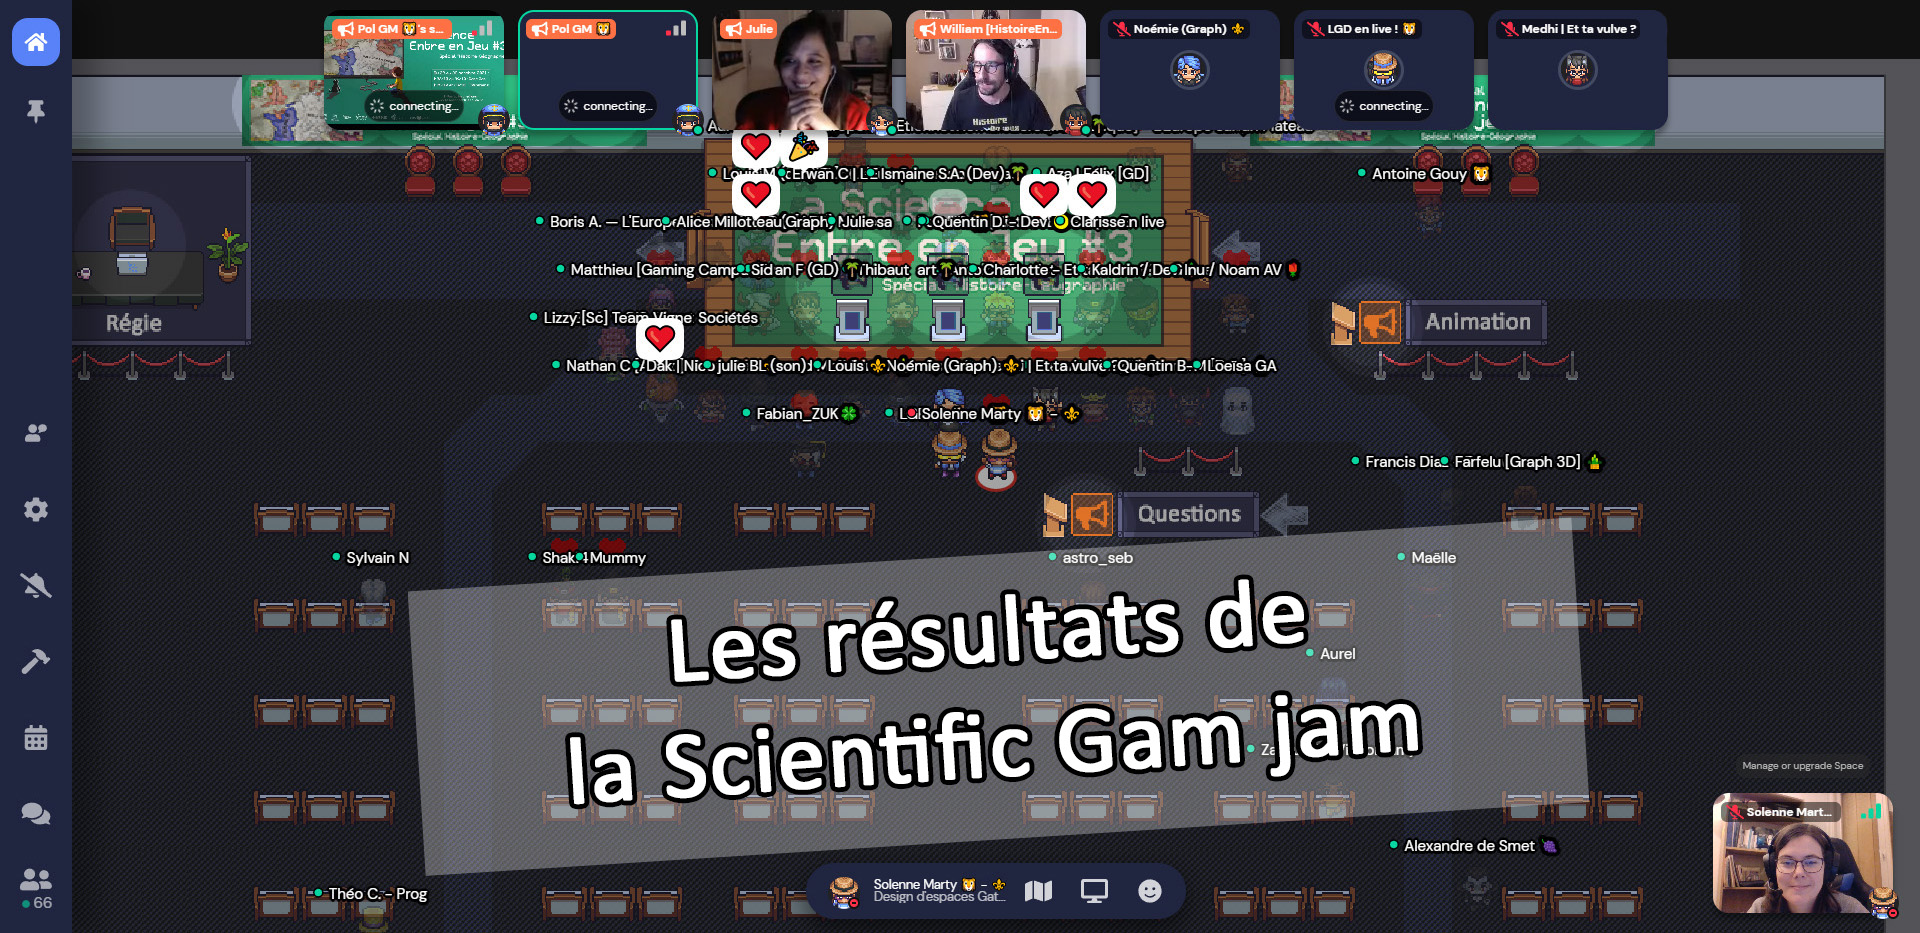 Annonce des résultats de la Scientific Game Jam